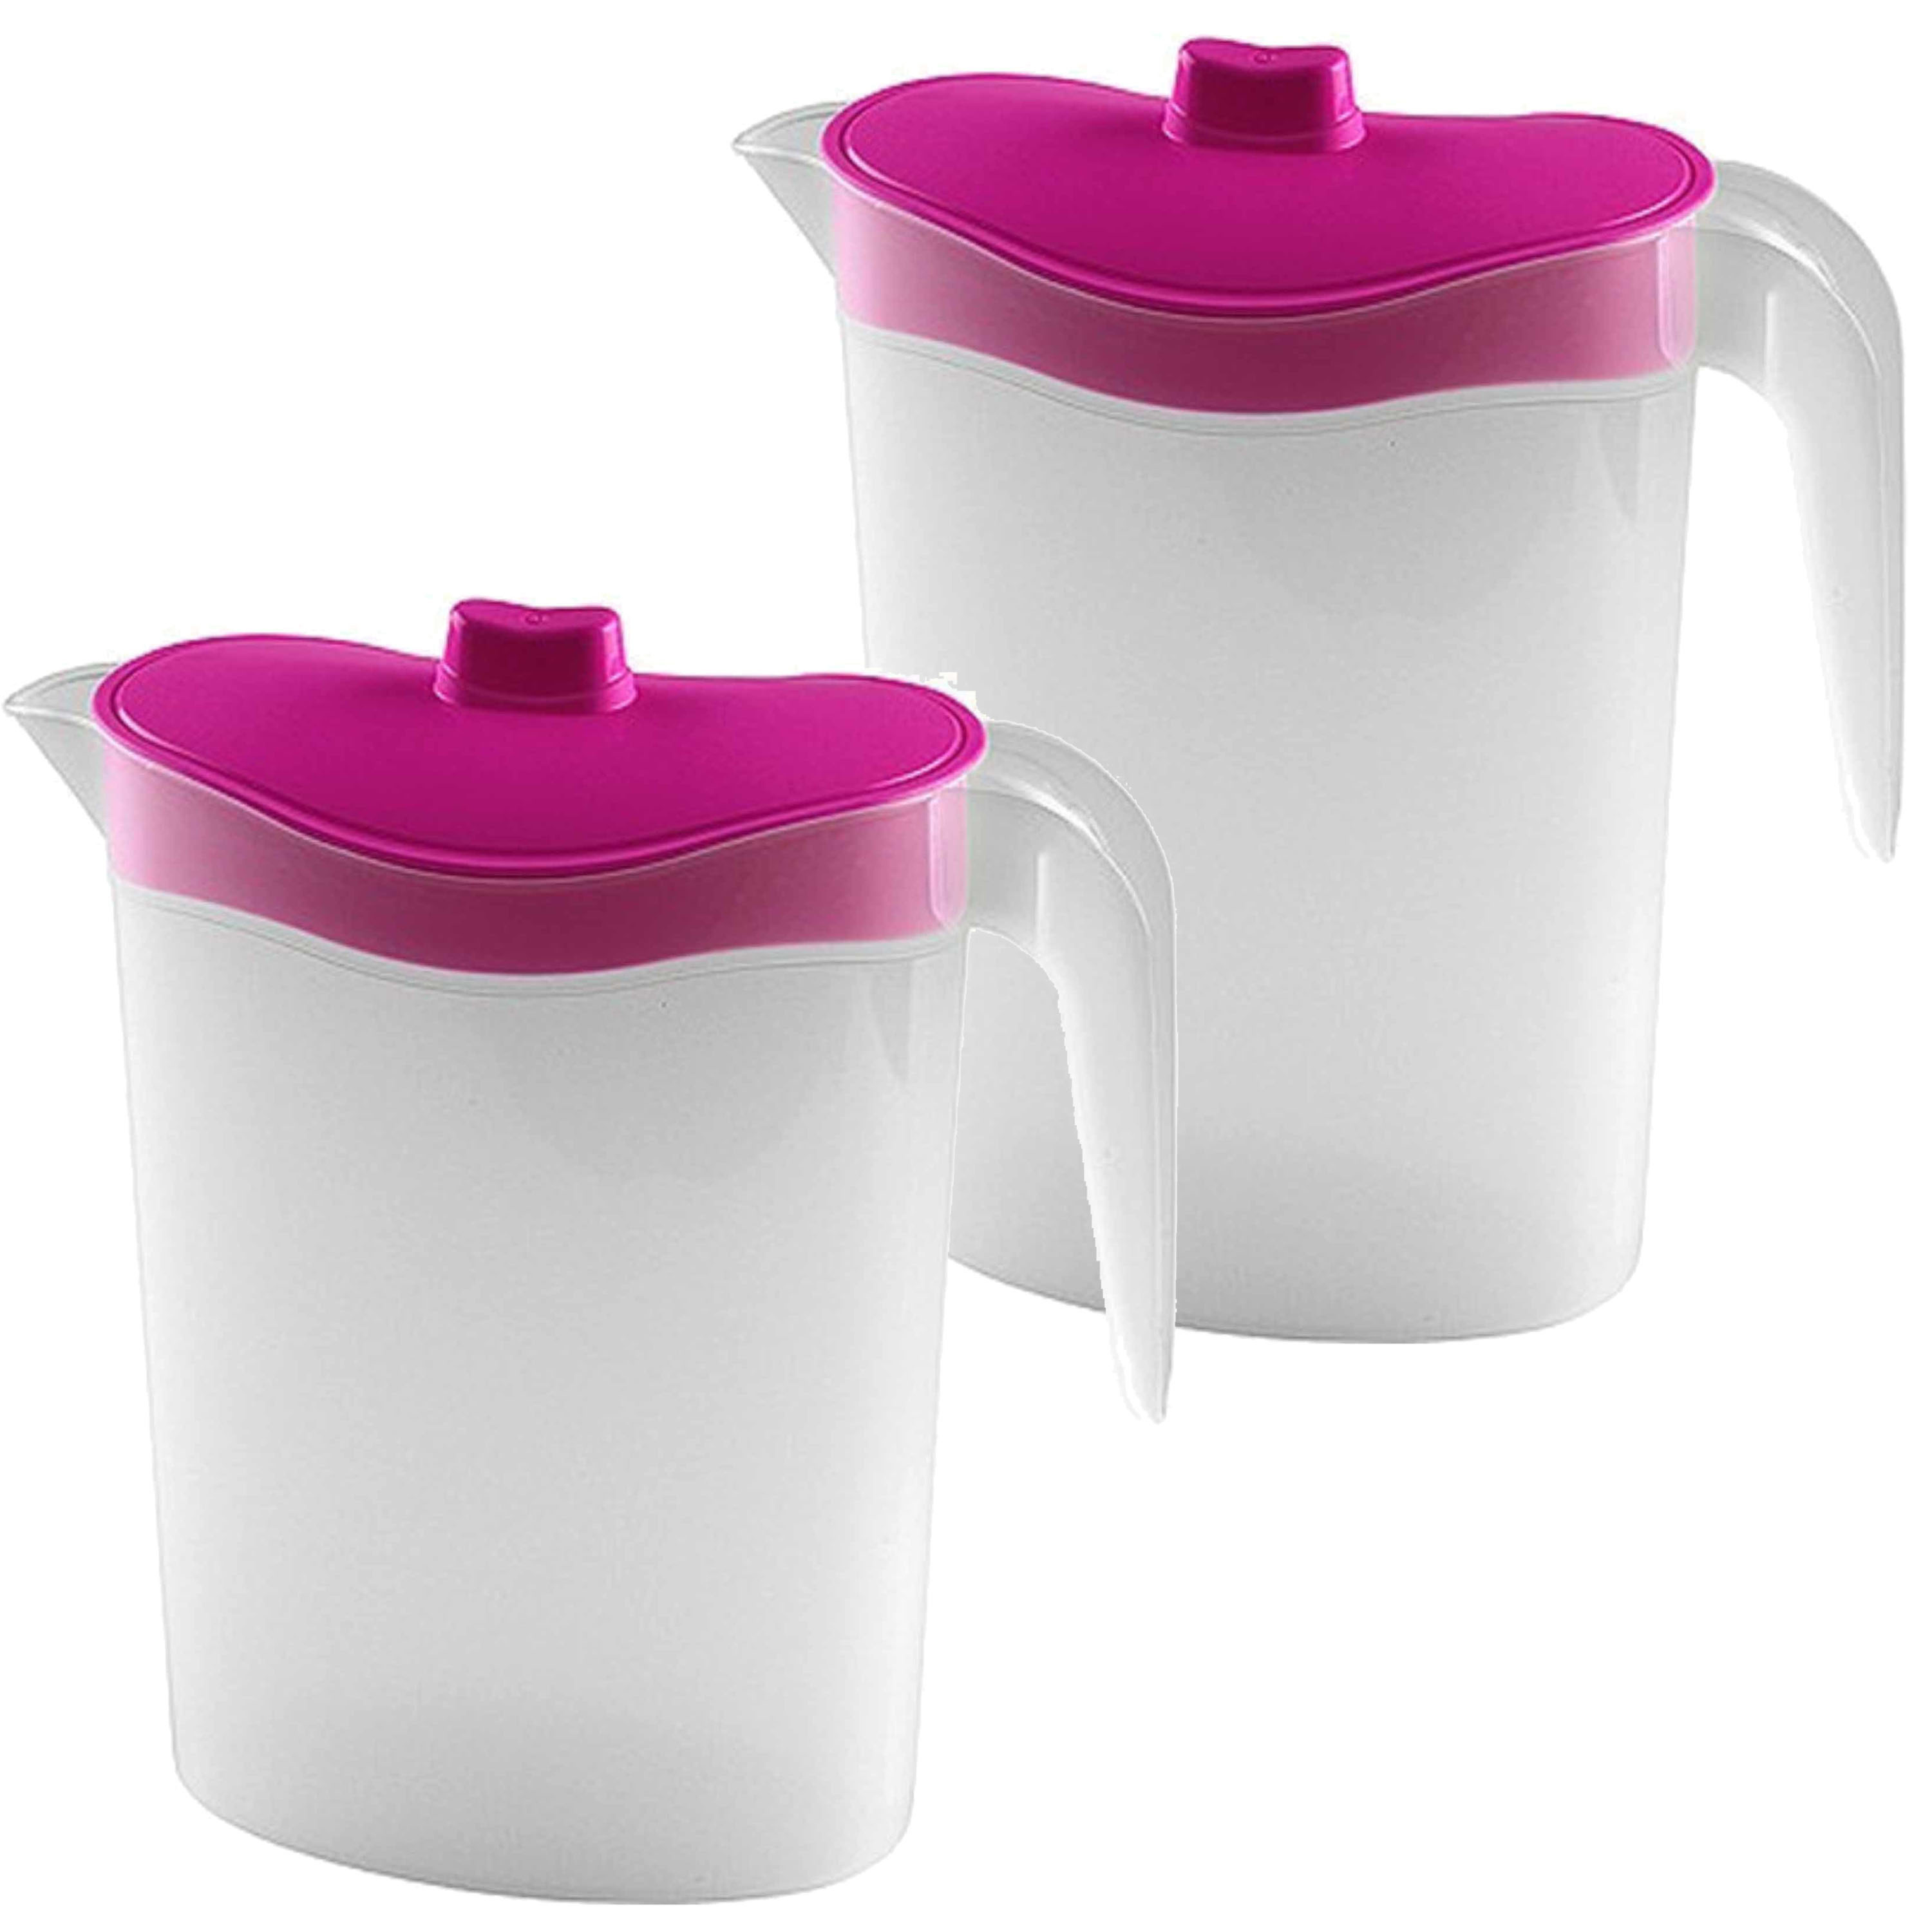 2x Smalle kunststof koelkast schenkkannen 1,5 liter met roze deksel